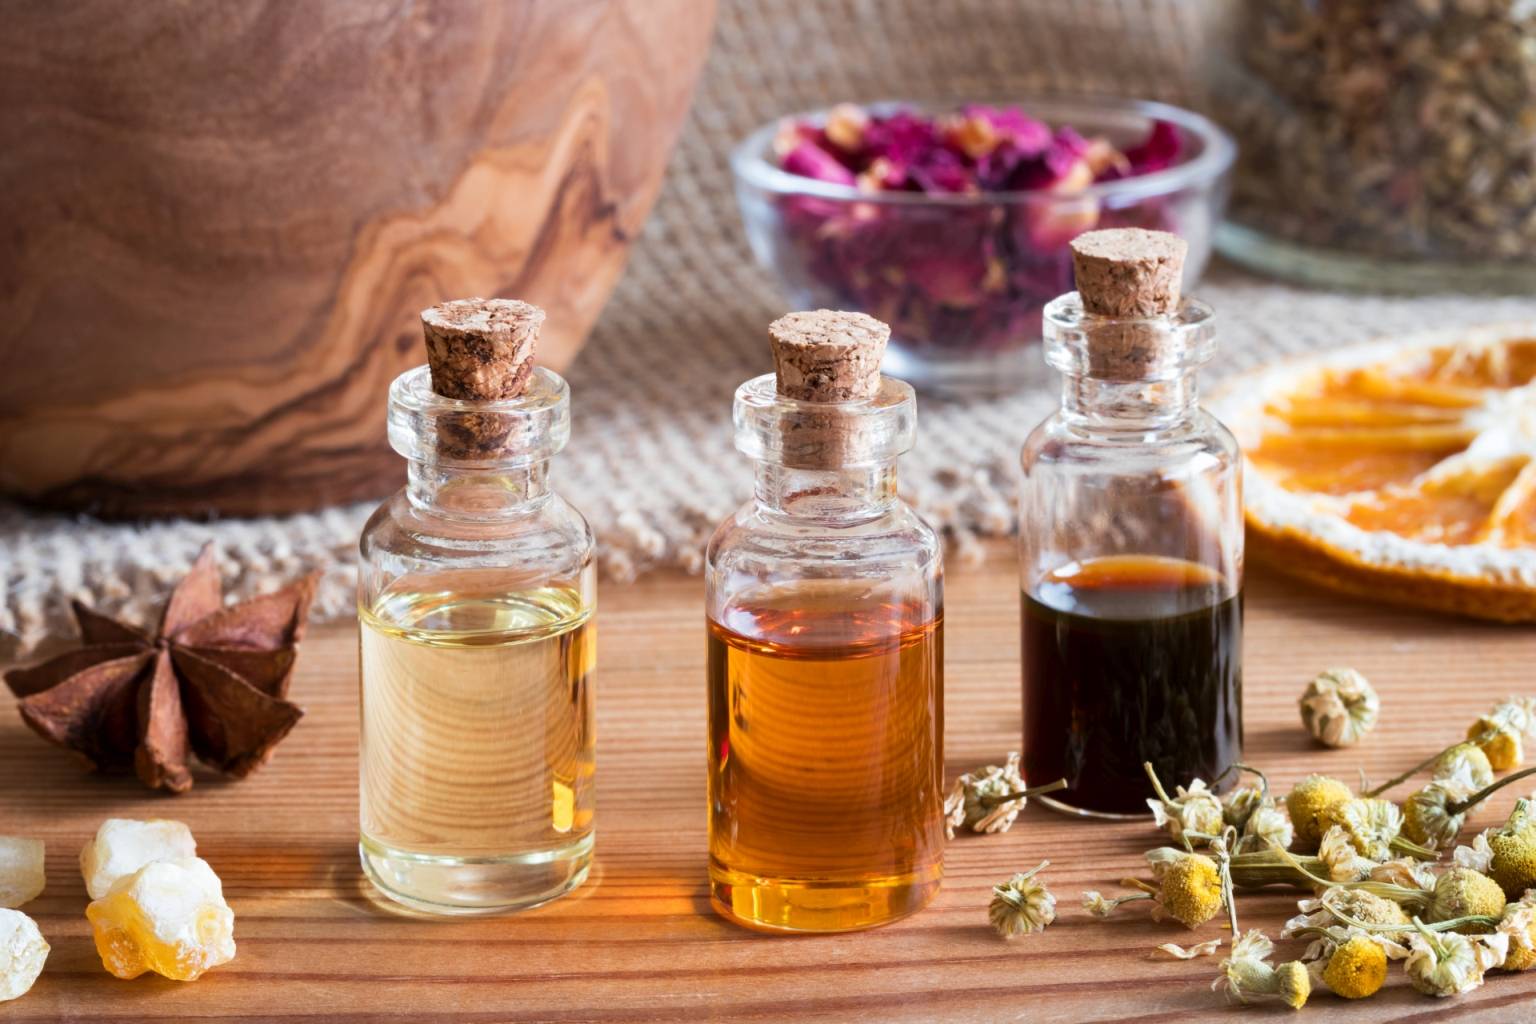 Jak działa aromaterapia? Czy olejki eteryczne mają właściwości lecznicze? Trzy buteleczki z olejkami eterycznymi stoją na drewnianym blacie w otoczeniu suszonych kwiatów, przypraw i cytrusów.